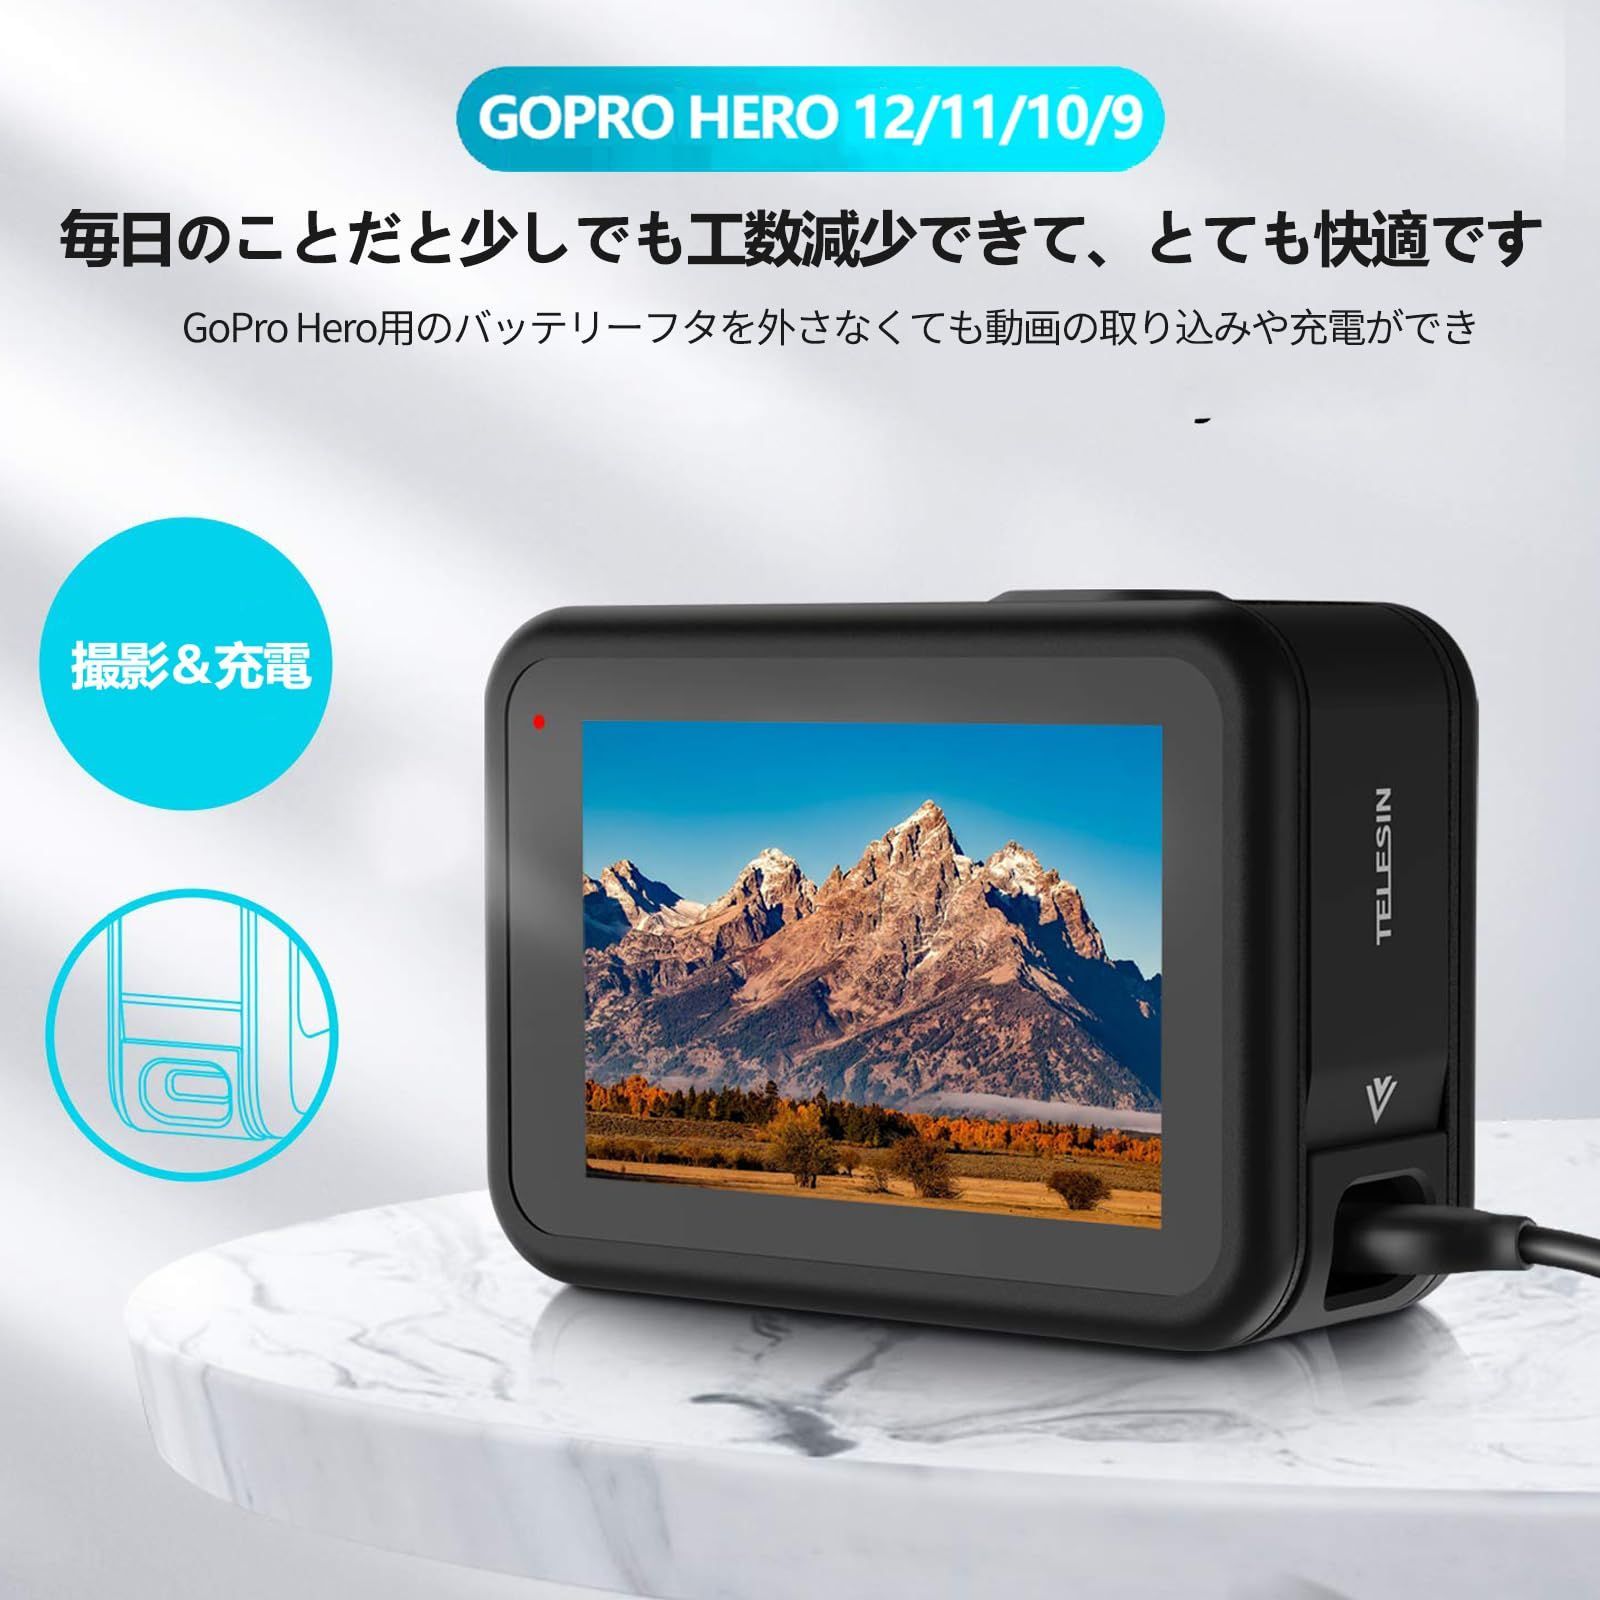 特価商品】Hero12 GoPro用 Hero11 Hero10 Hero9 バッテリーカバー